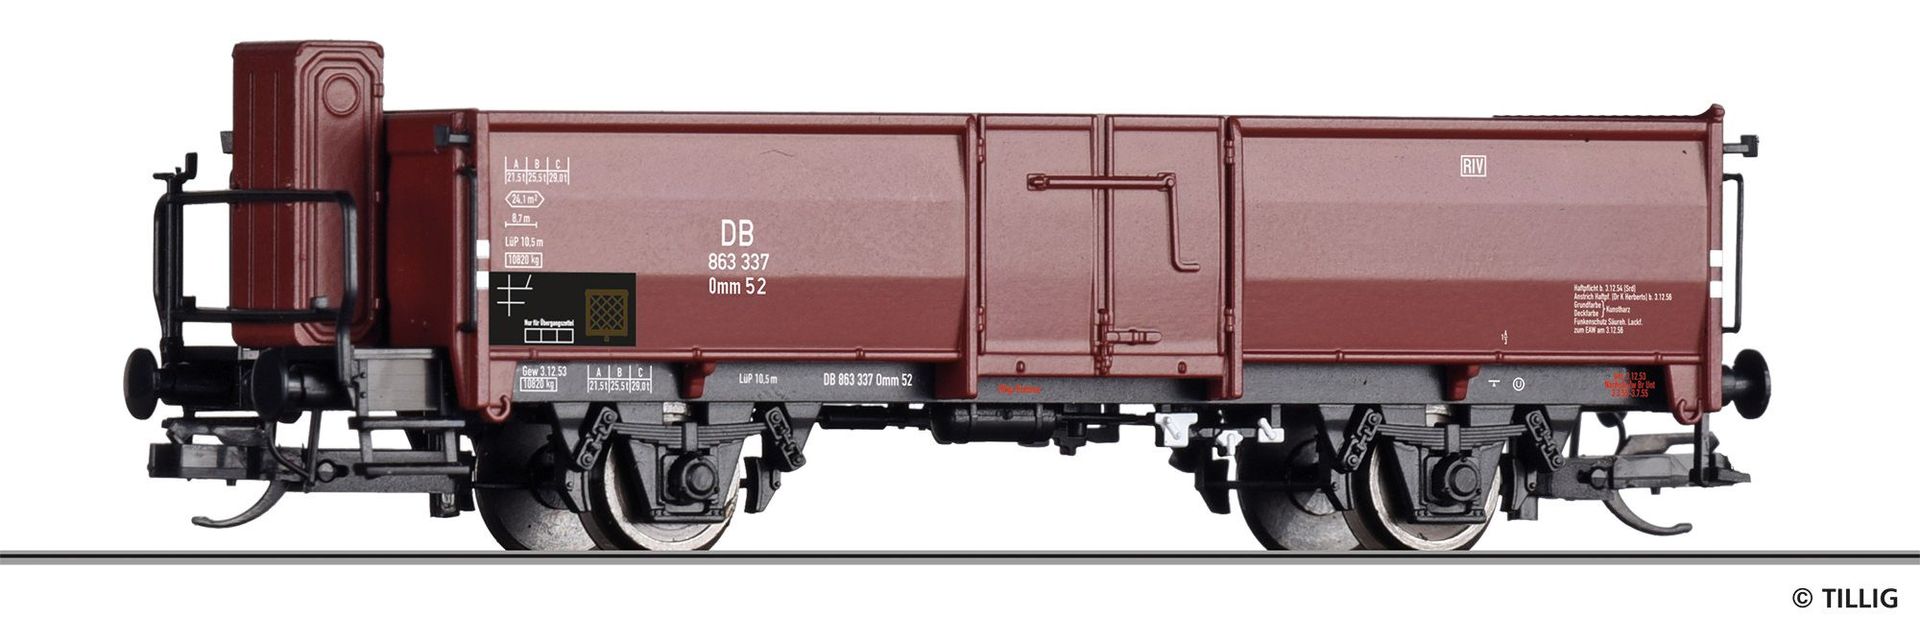 Tillig 14031 - Güterwagen offen DB Ep.III Omm 52 TT 1:120